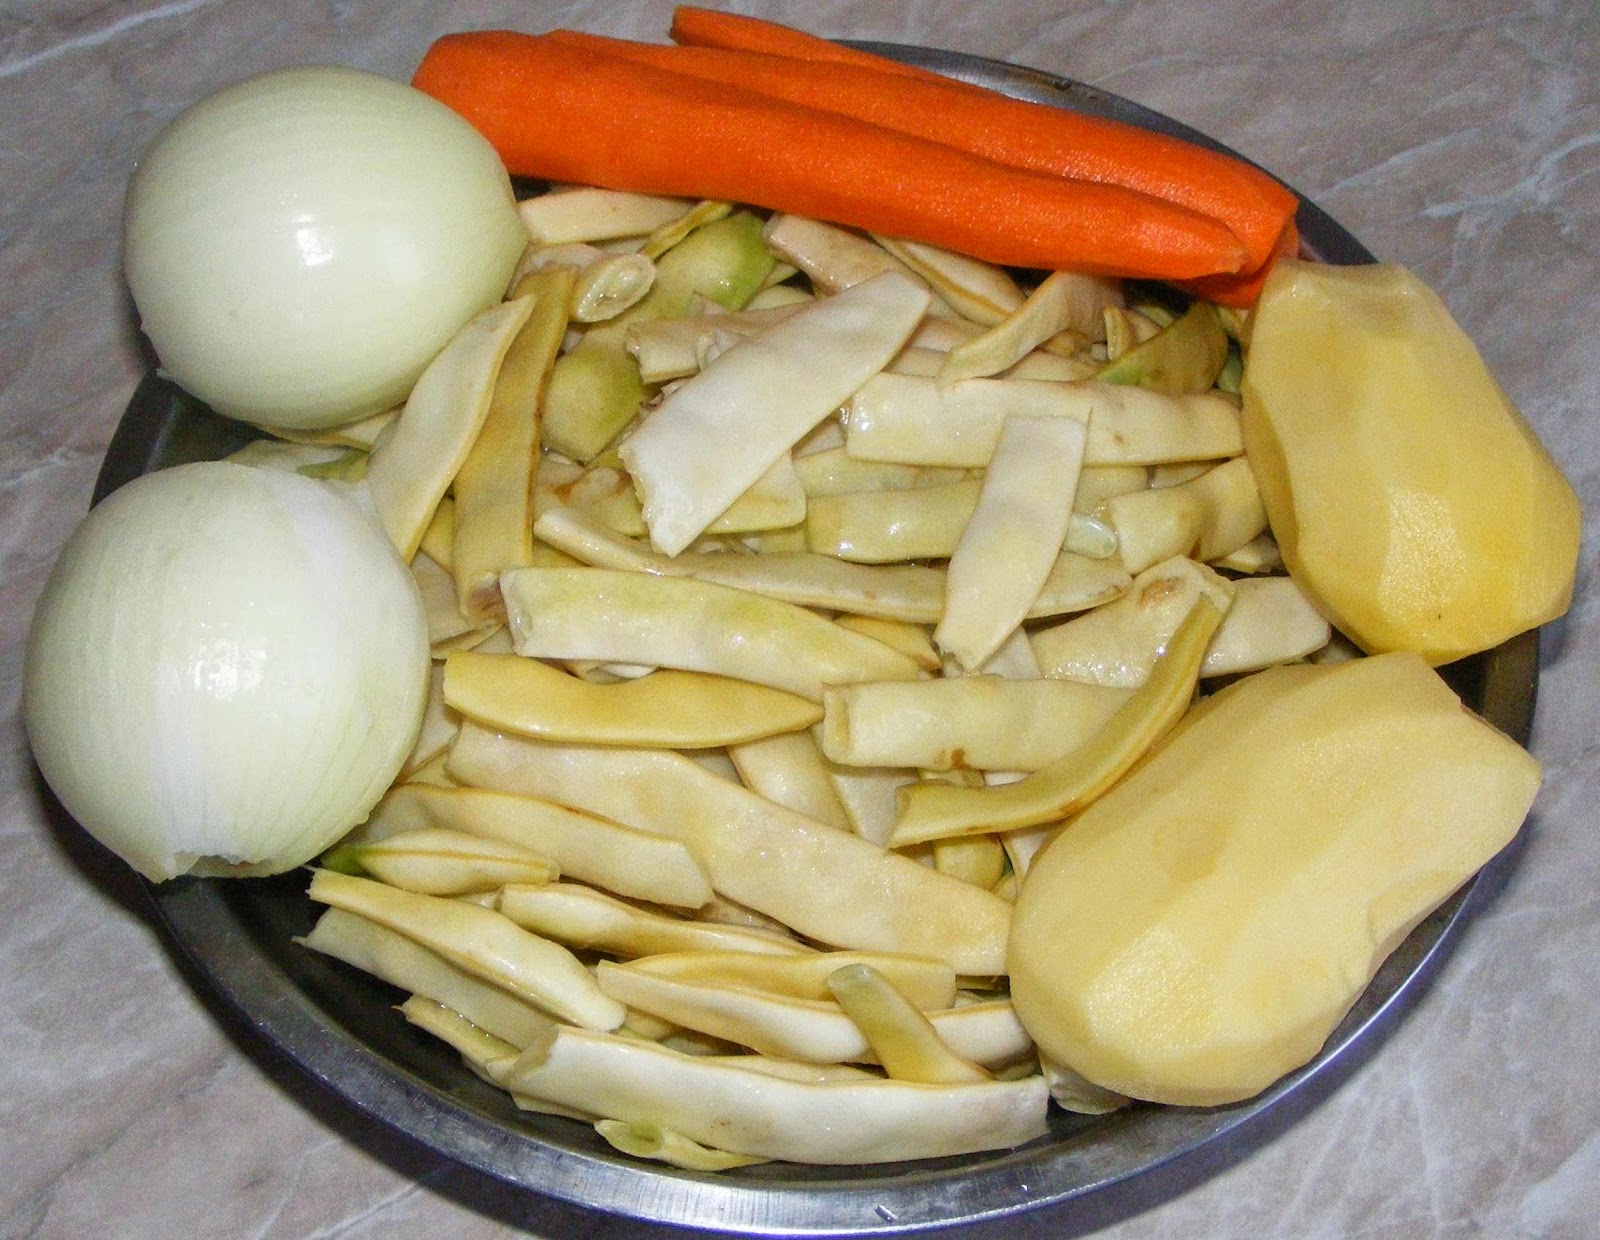 legume proaspete pentru gatit mancare, legume de gradina, legume proaspete, fasole verde, ceapa, morcovi, cartofi, retete cu legume, preparate din legume, retete si preparate culinare din legume, preparare legume, 